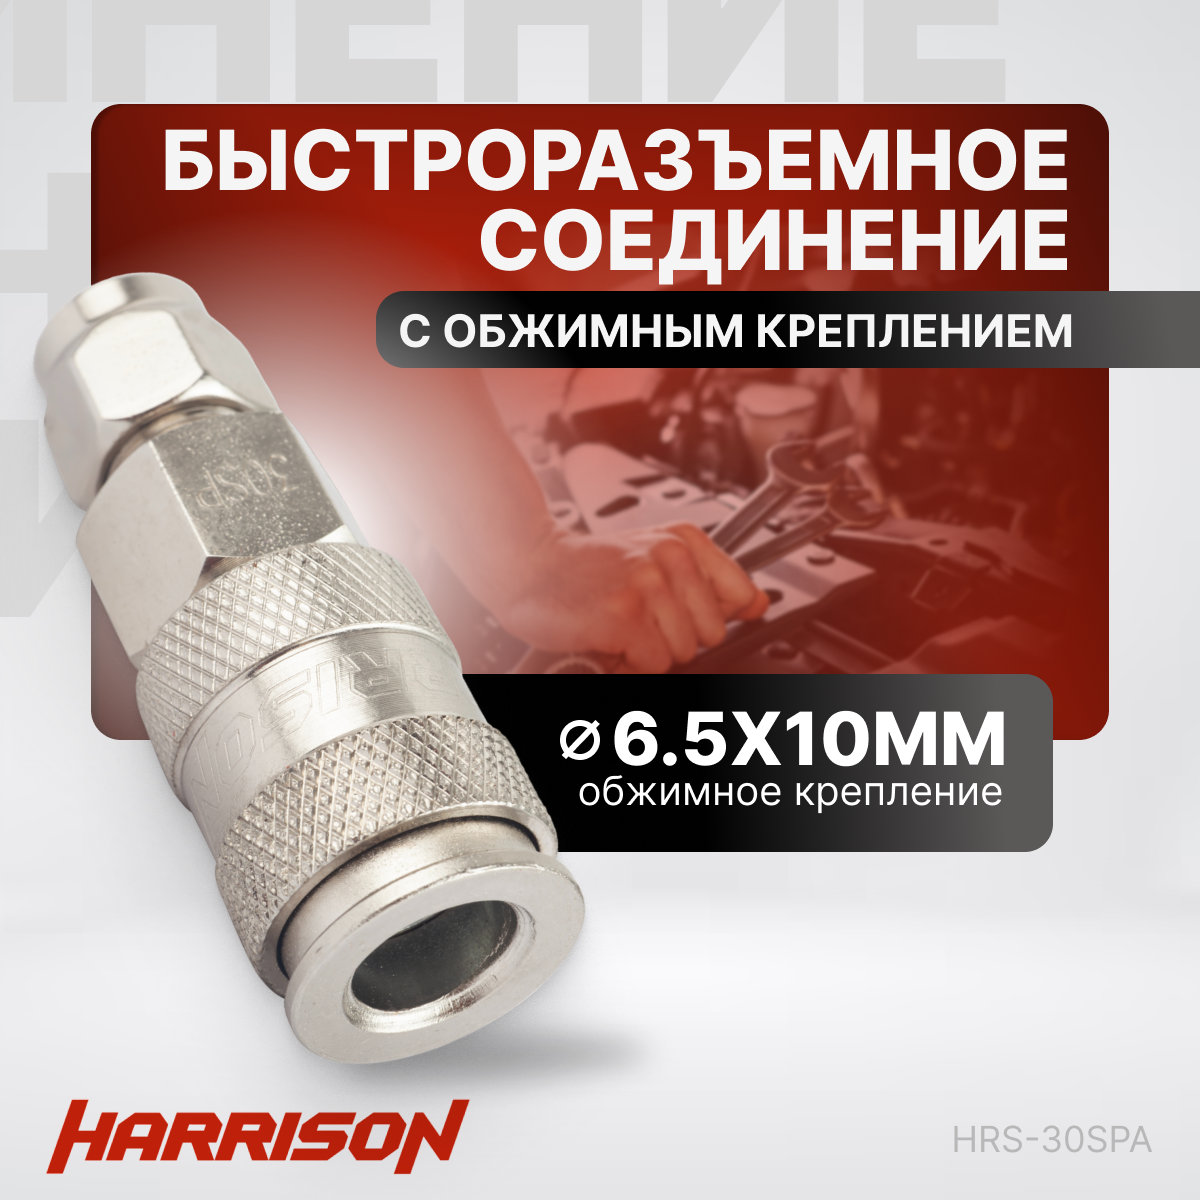 Пневматическое быстроразъёмное соединение с обжимным креплением PU шланга 6.5х10 мм Harrison HRS-30SPA